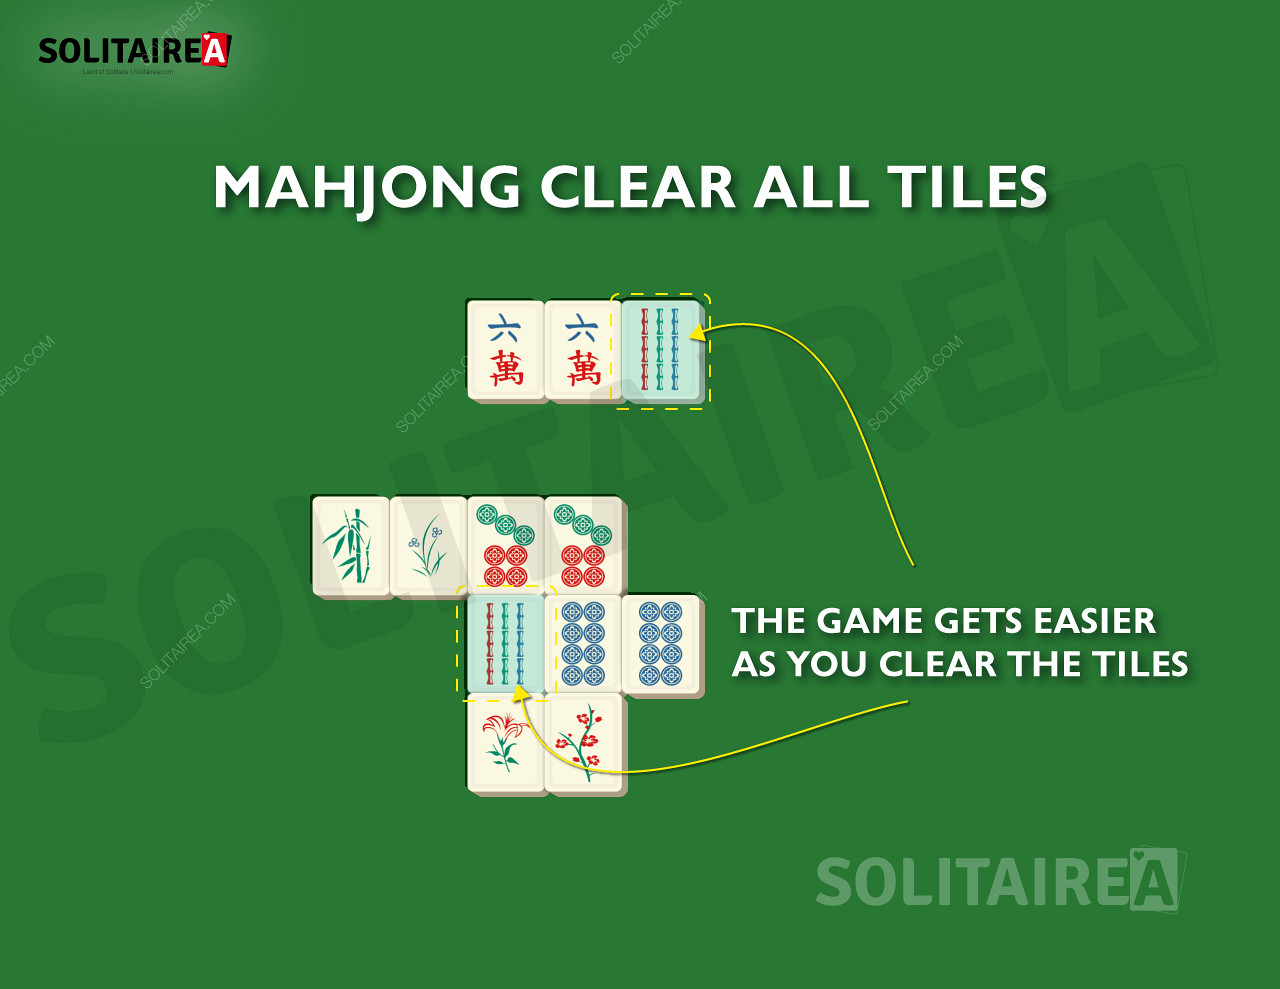 À medida que progride, menos peças são deixadas para serem limpas no Mahjong Solitaire.